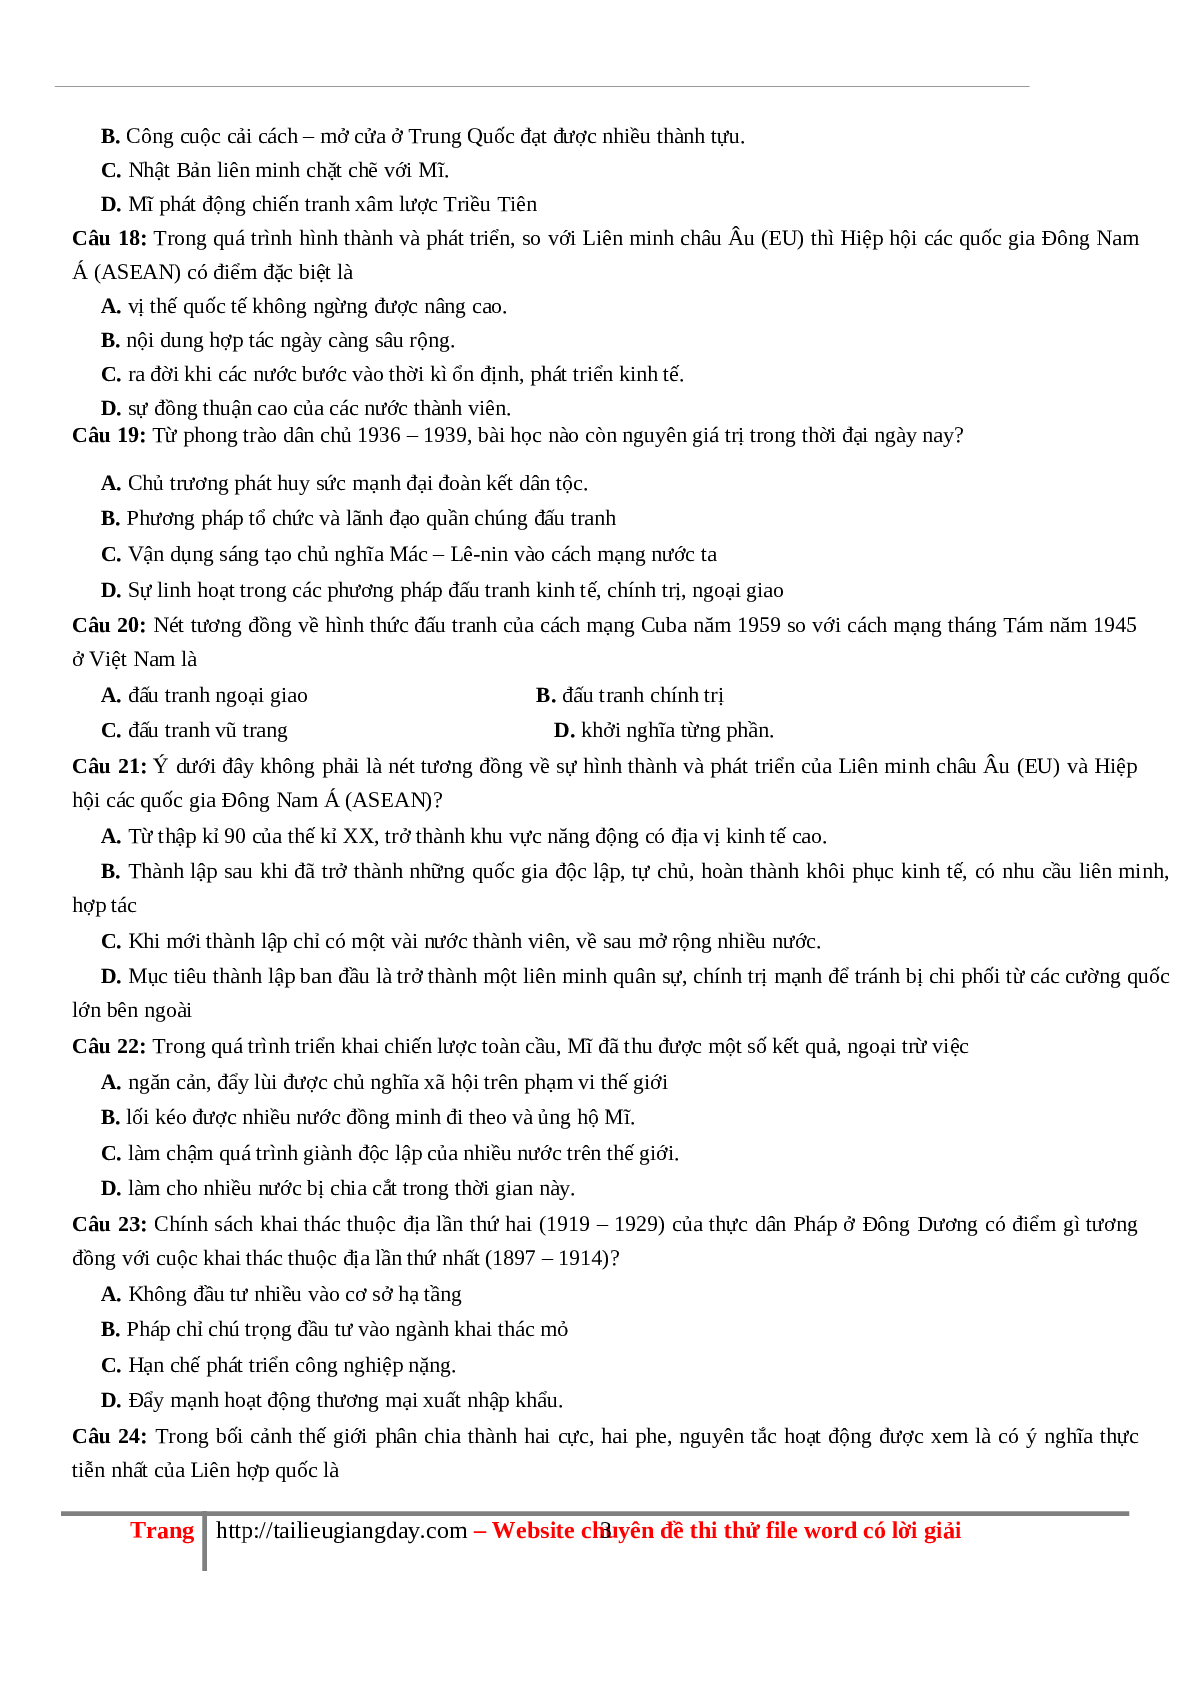 70 câu hỏi ôn tập hay - Lịch Sử 12 (trang 3)